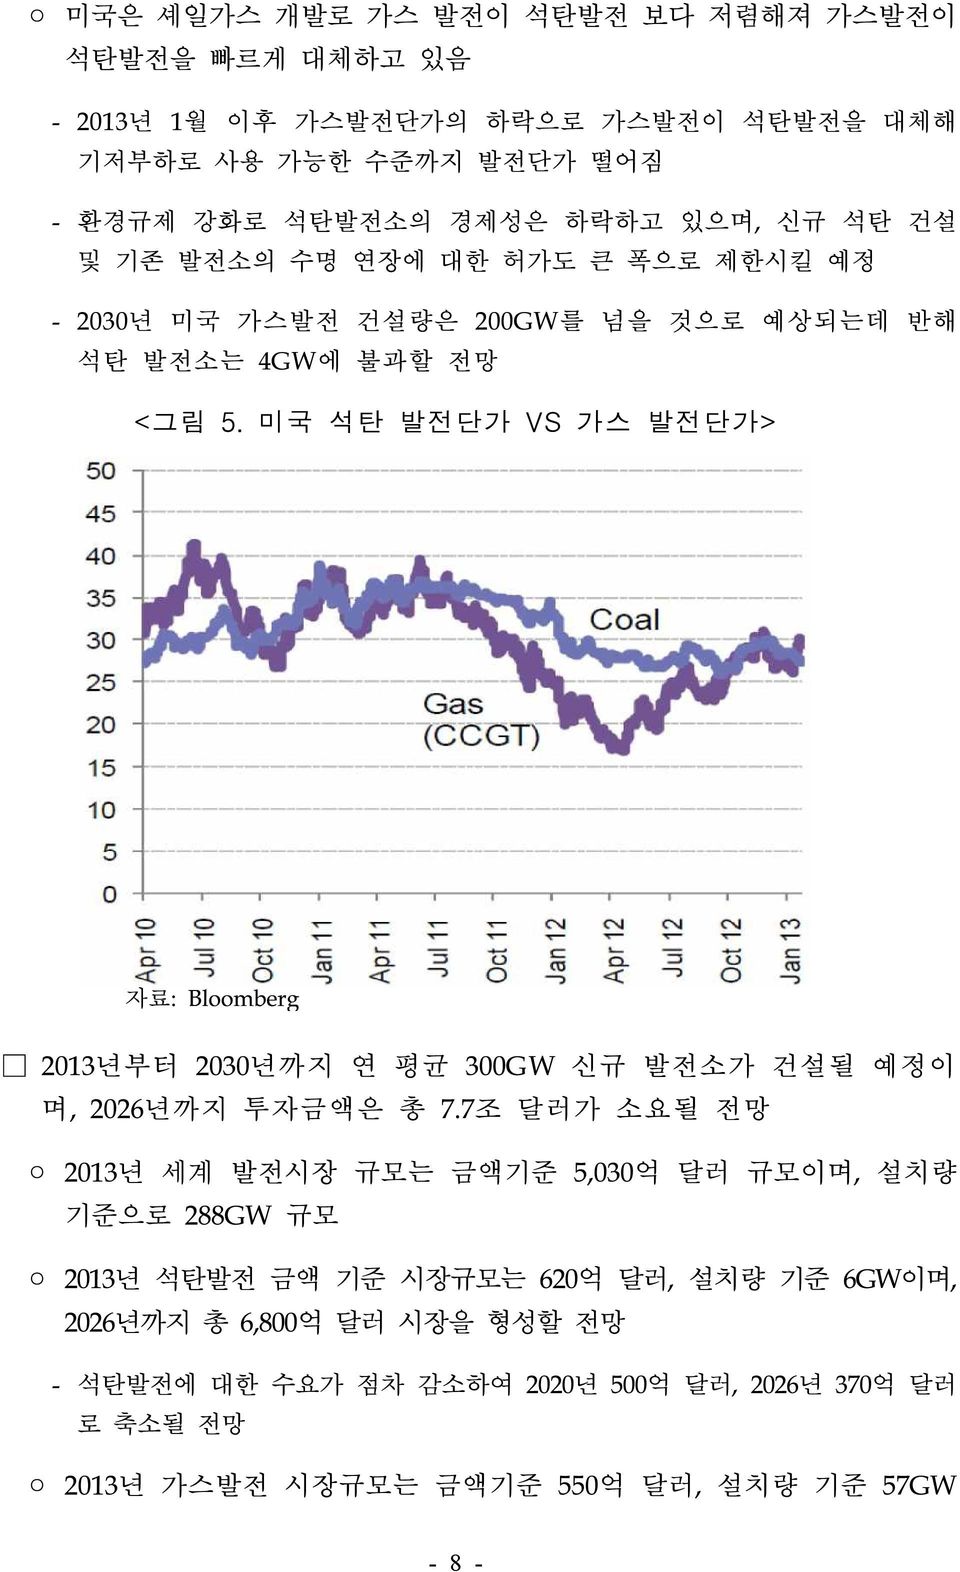 미국 석탄 발전단가 VS 가스 발전단가> 자료: Bloomberg 2013년부터 2030년까지 연 평균 300GW 신규 발전소가 건설될 예정이 며, 2026년까지 투자금액은 총 7.